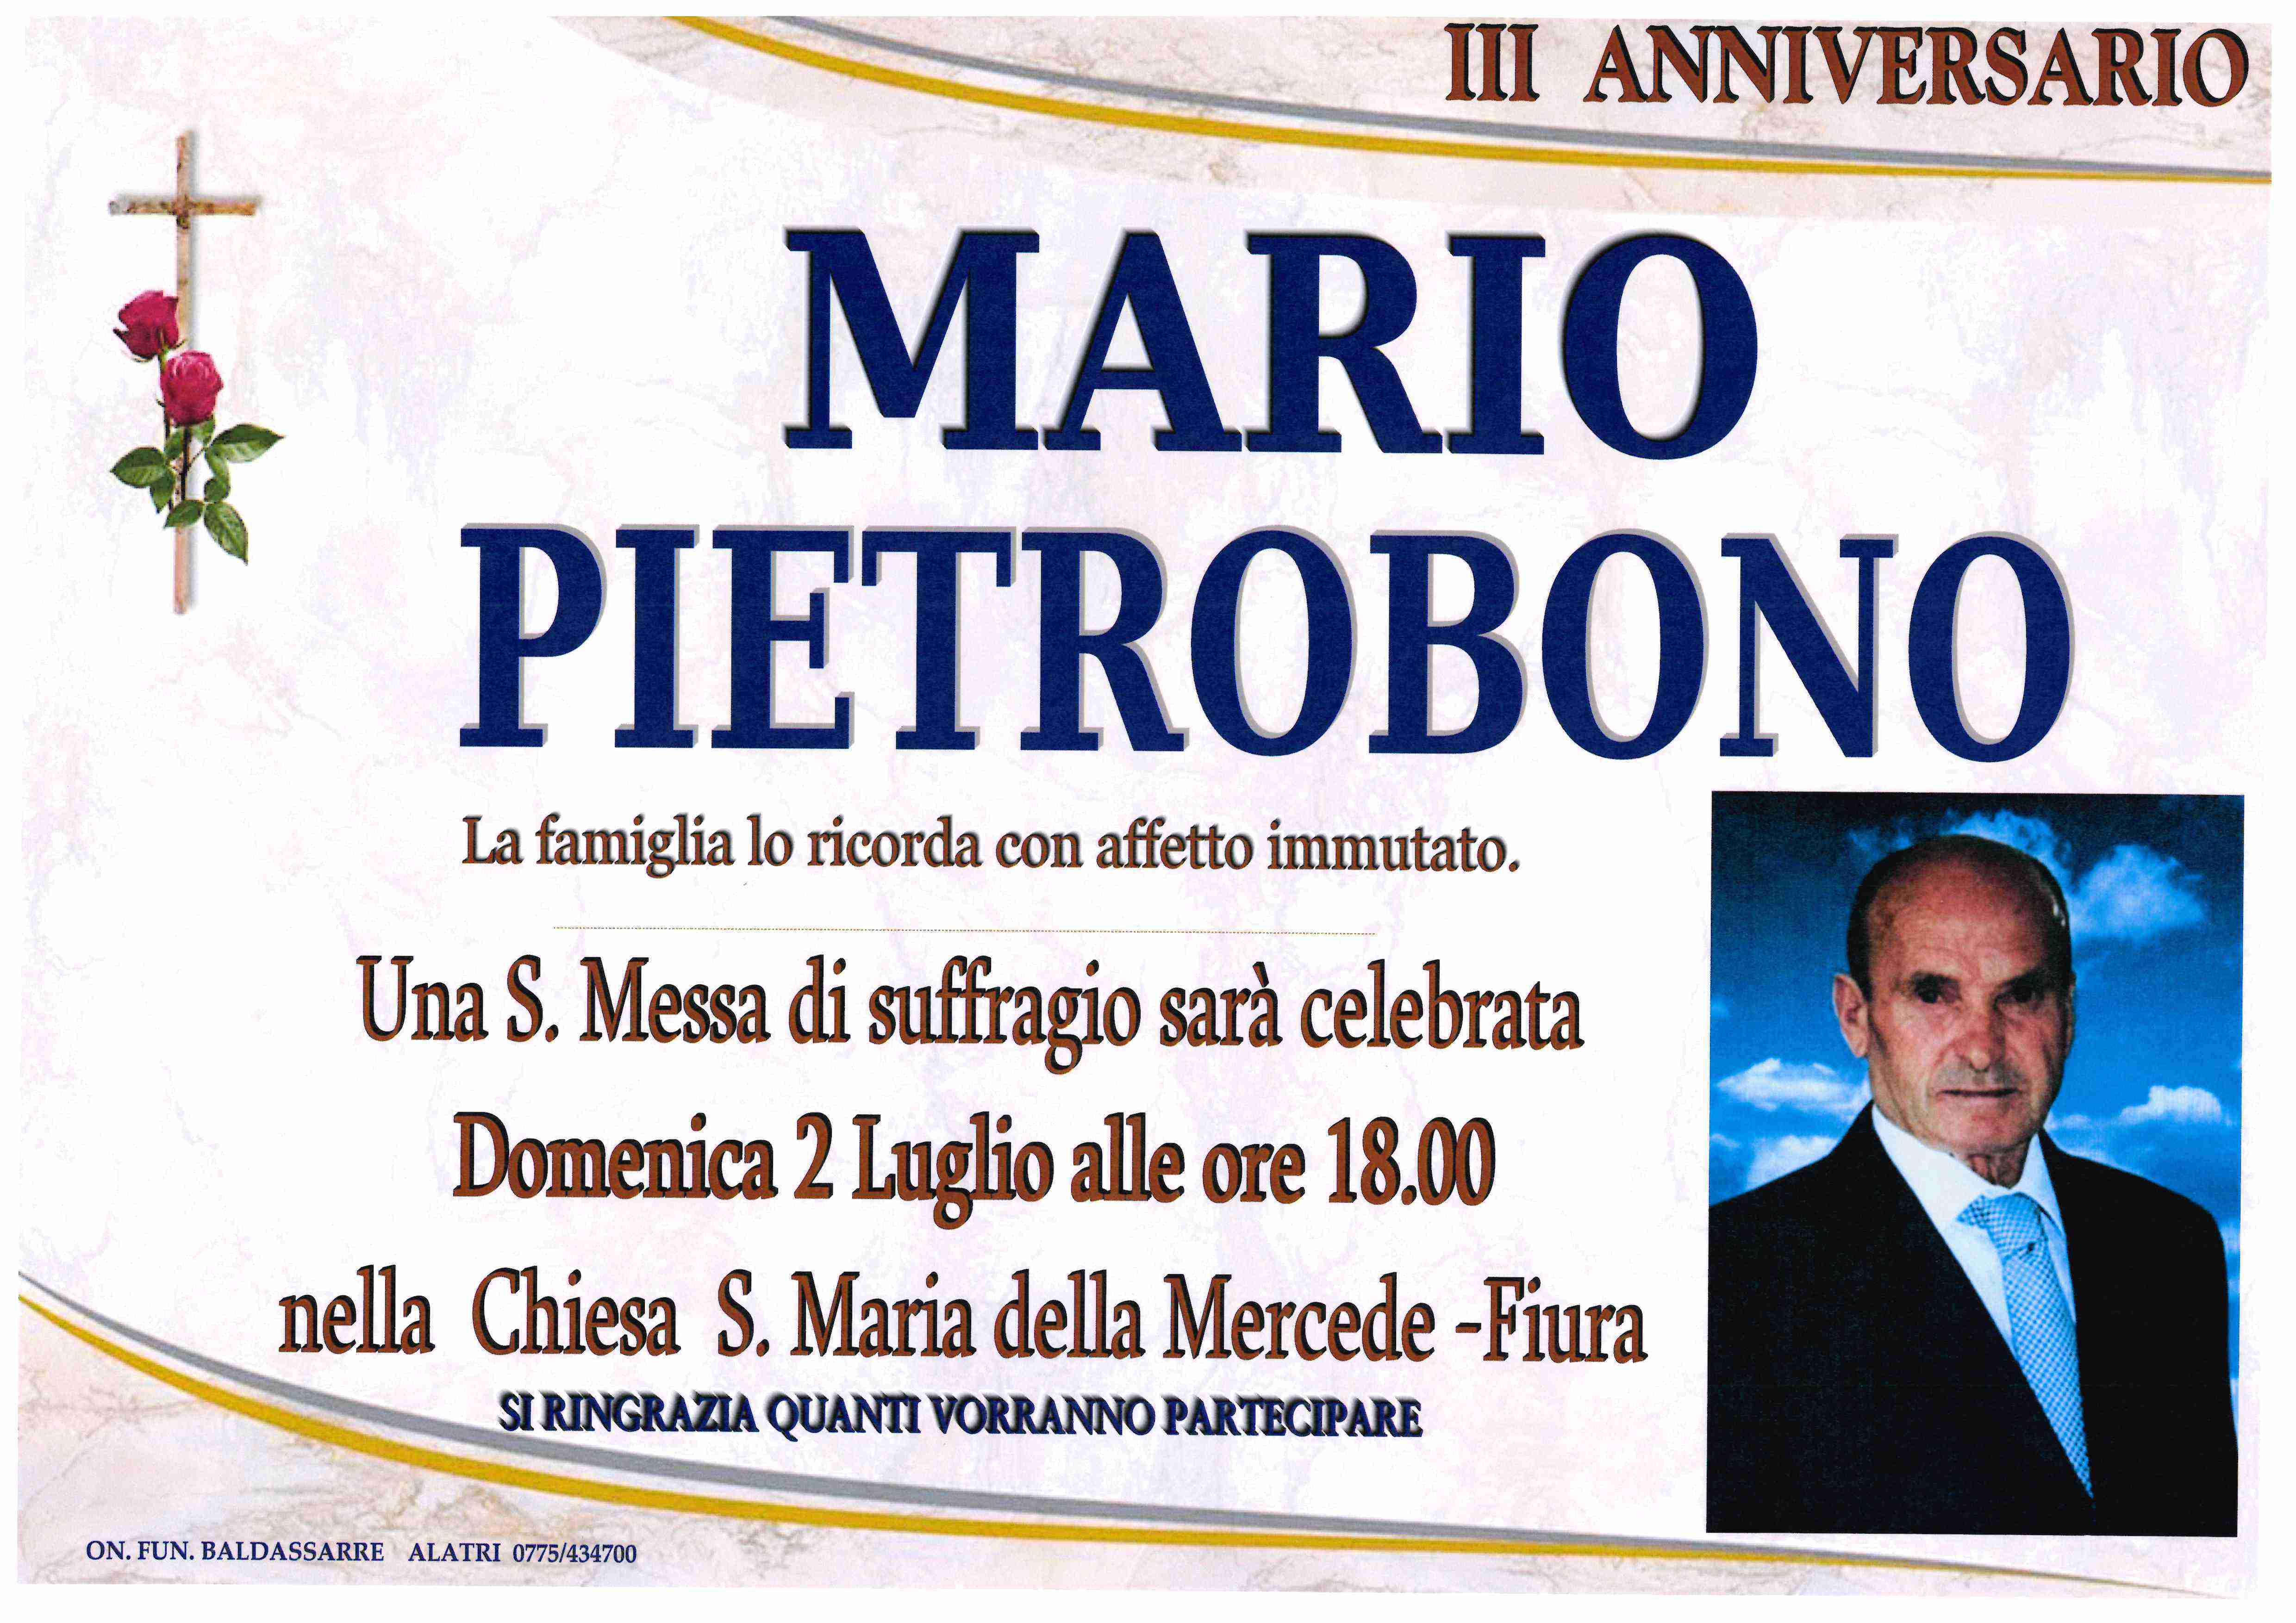 Mario Pietrobono